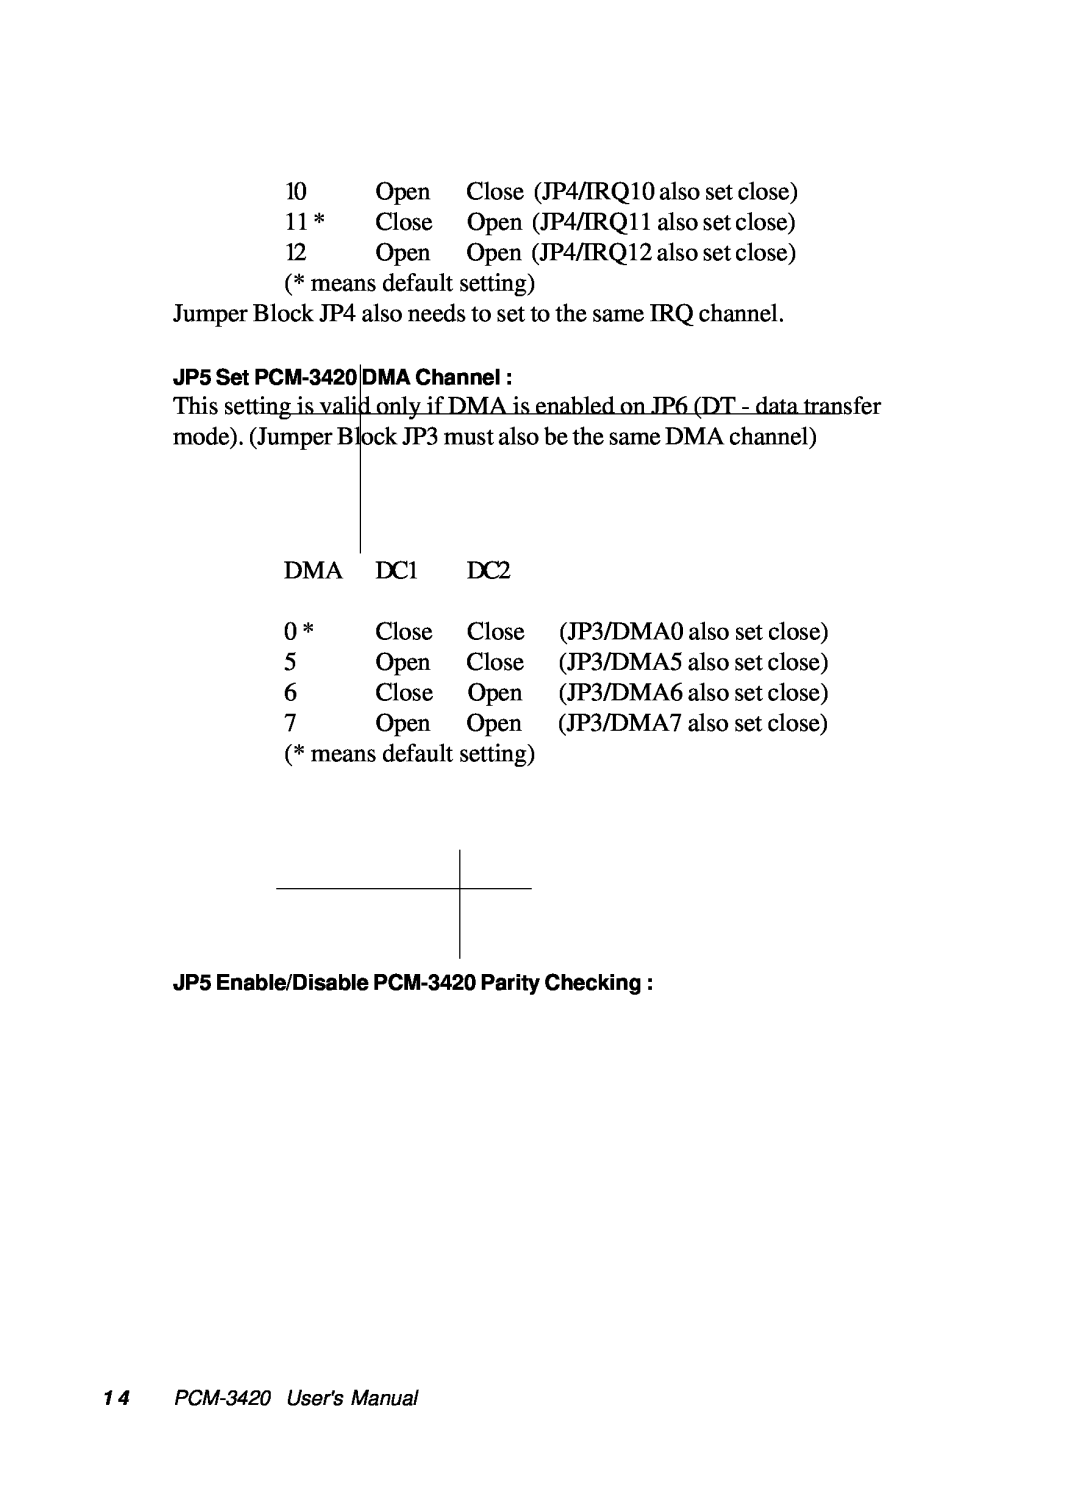 Adaptec PC/104 JP5 Set PCM-3420 DMA Channel, JP5 Enable/Disable PCM-3420 Parity Checking, 1 4 PCM-3420 Users Manual 